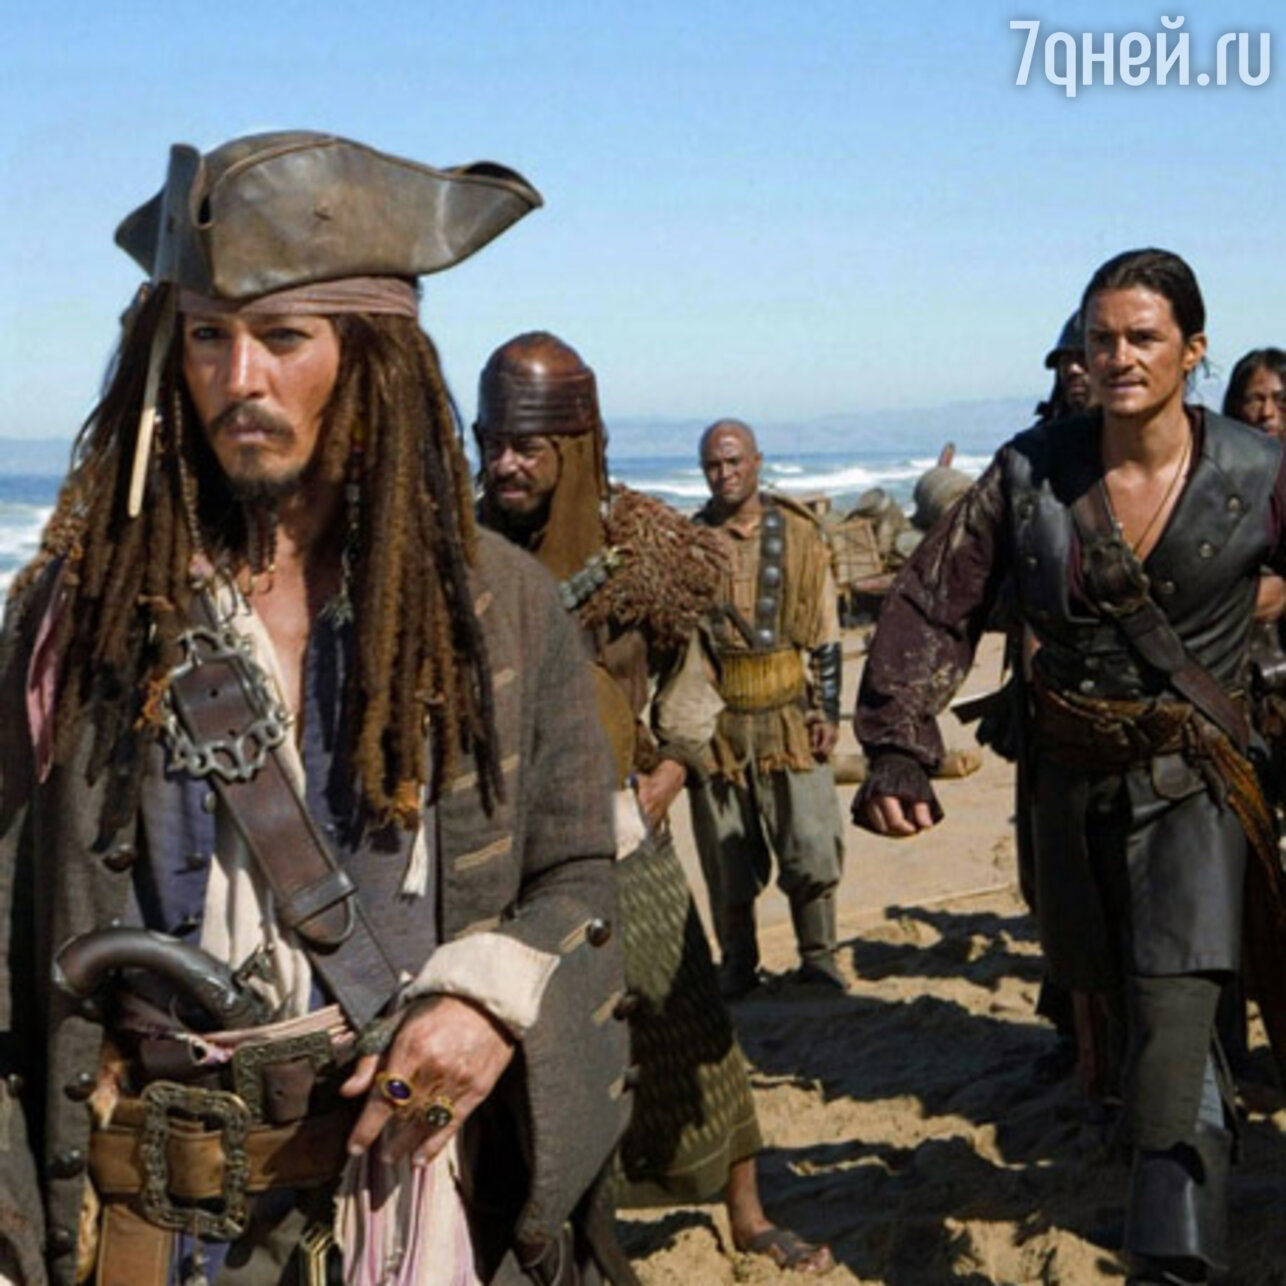 Пираты 2 (II): месть Виктора Стагнетти - XXX фильм с переводом